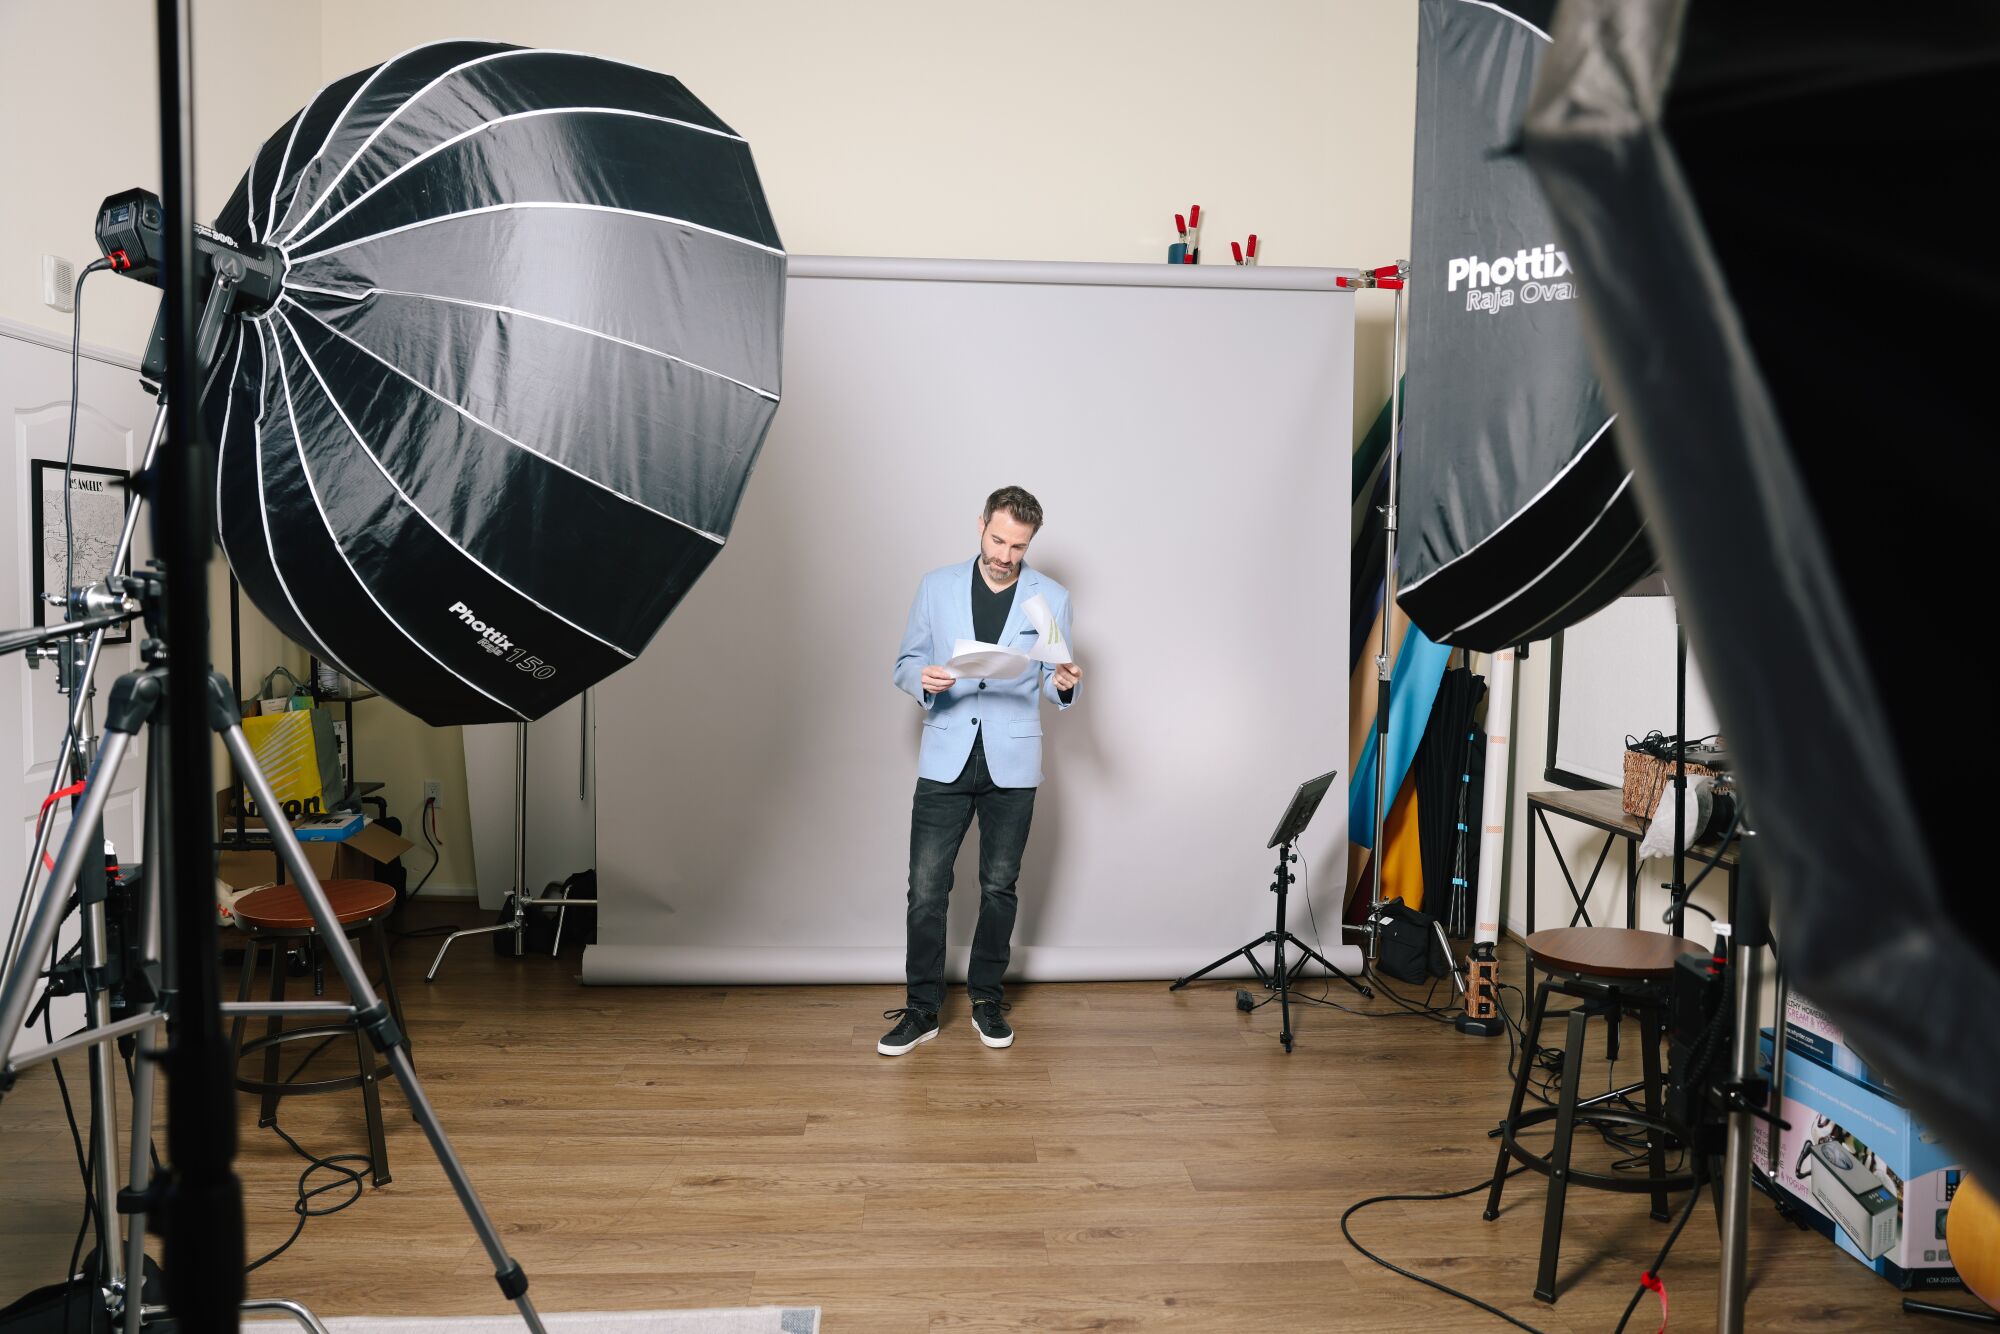 एक आदमी फोटो स्टूडियो में एक स्क्रिप्ट लिए खड़ा है।